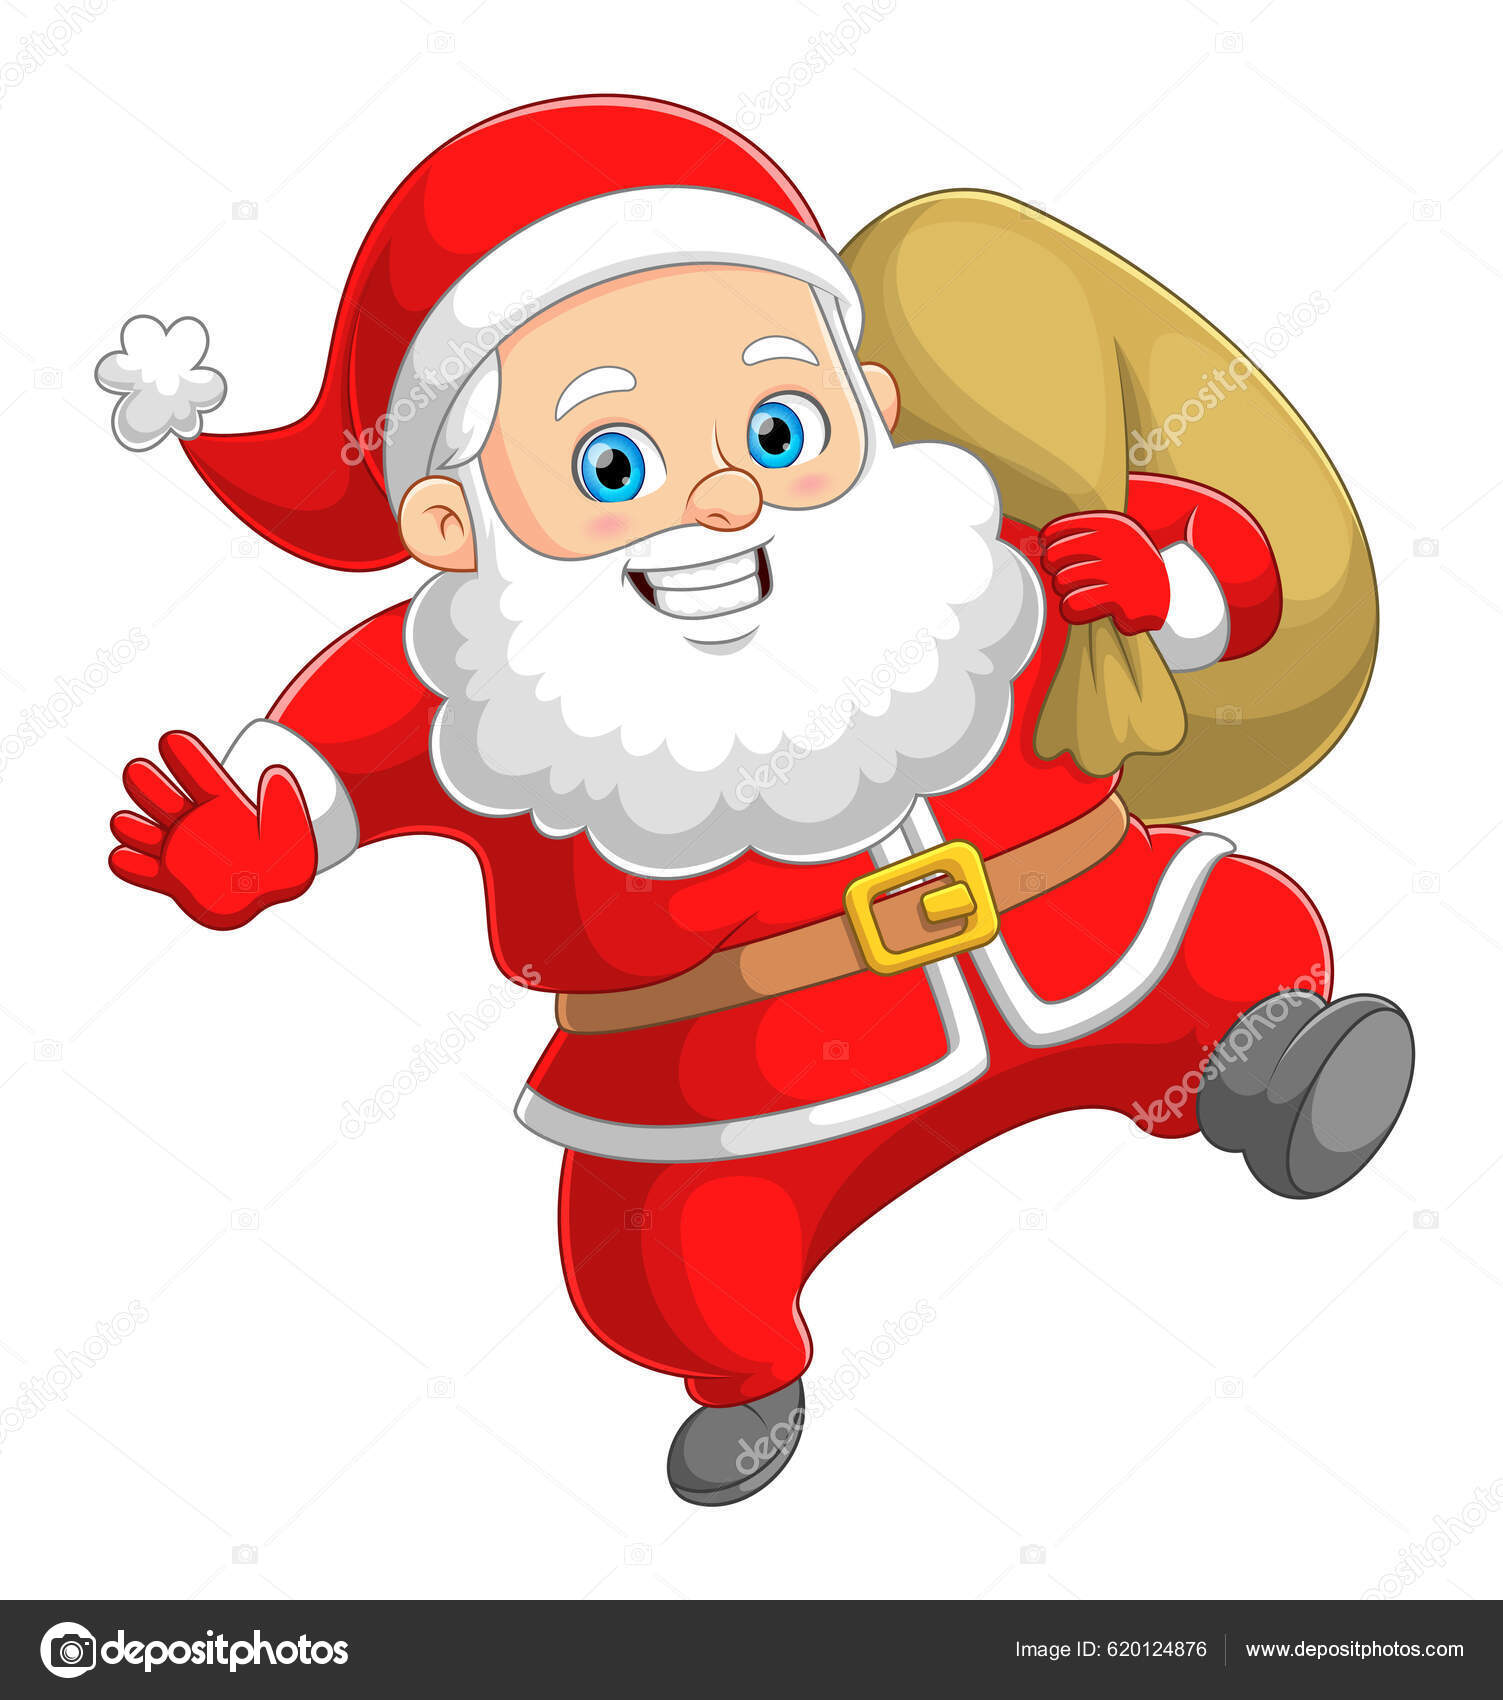 Den Söta Jultomten Dansar Och Glada För Att Skicka Julklapp vektor av  ©hermandesign2015@gmail.com 620124876